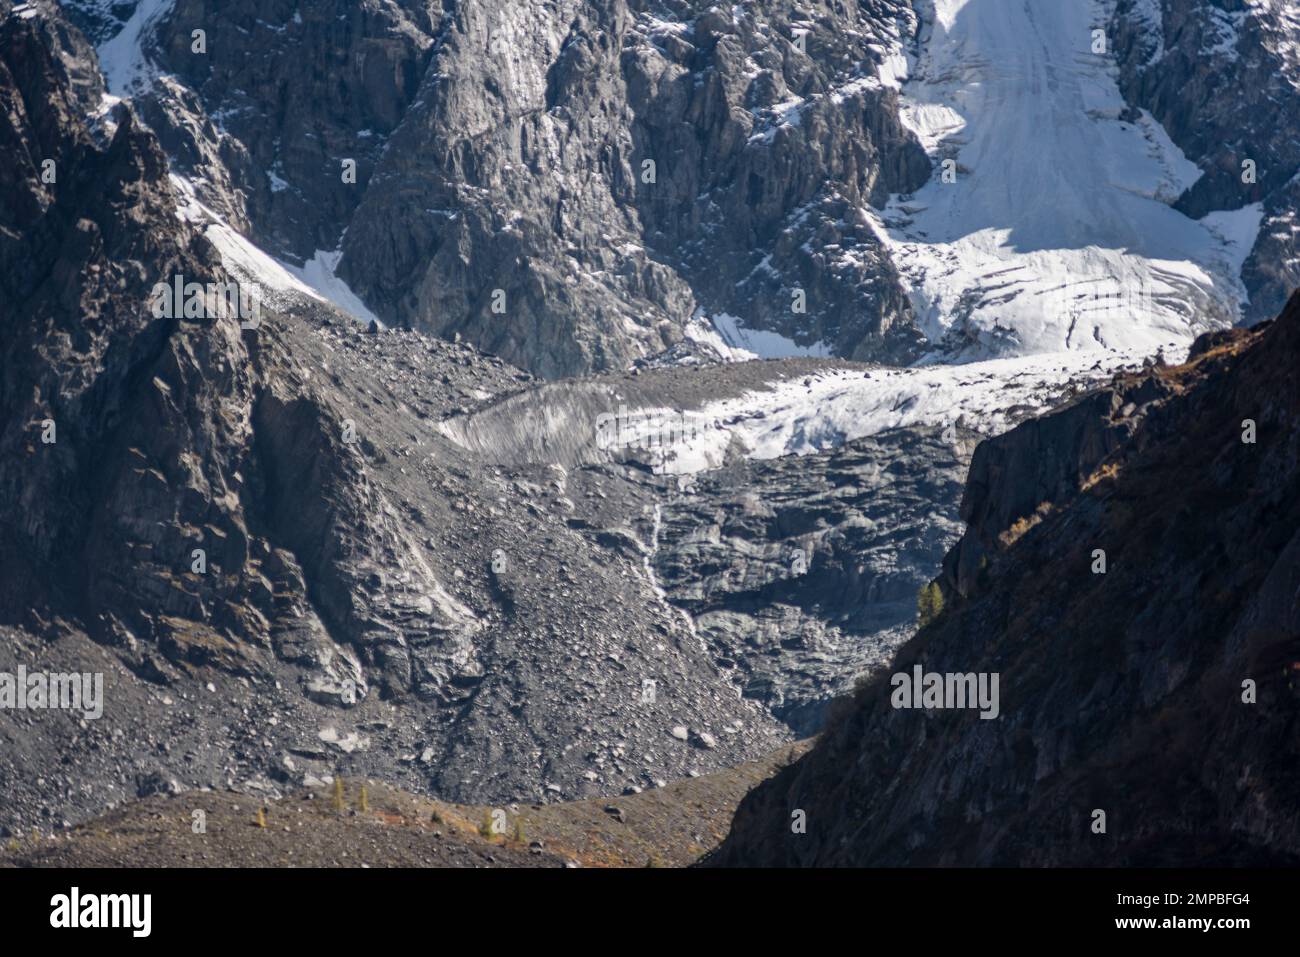 La lengua del glaciar alpino Zelinsky con nieve desciende de altas montañas de piedra rocosa entre los picos de Altai. Foto de stock